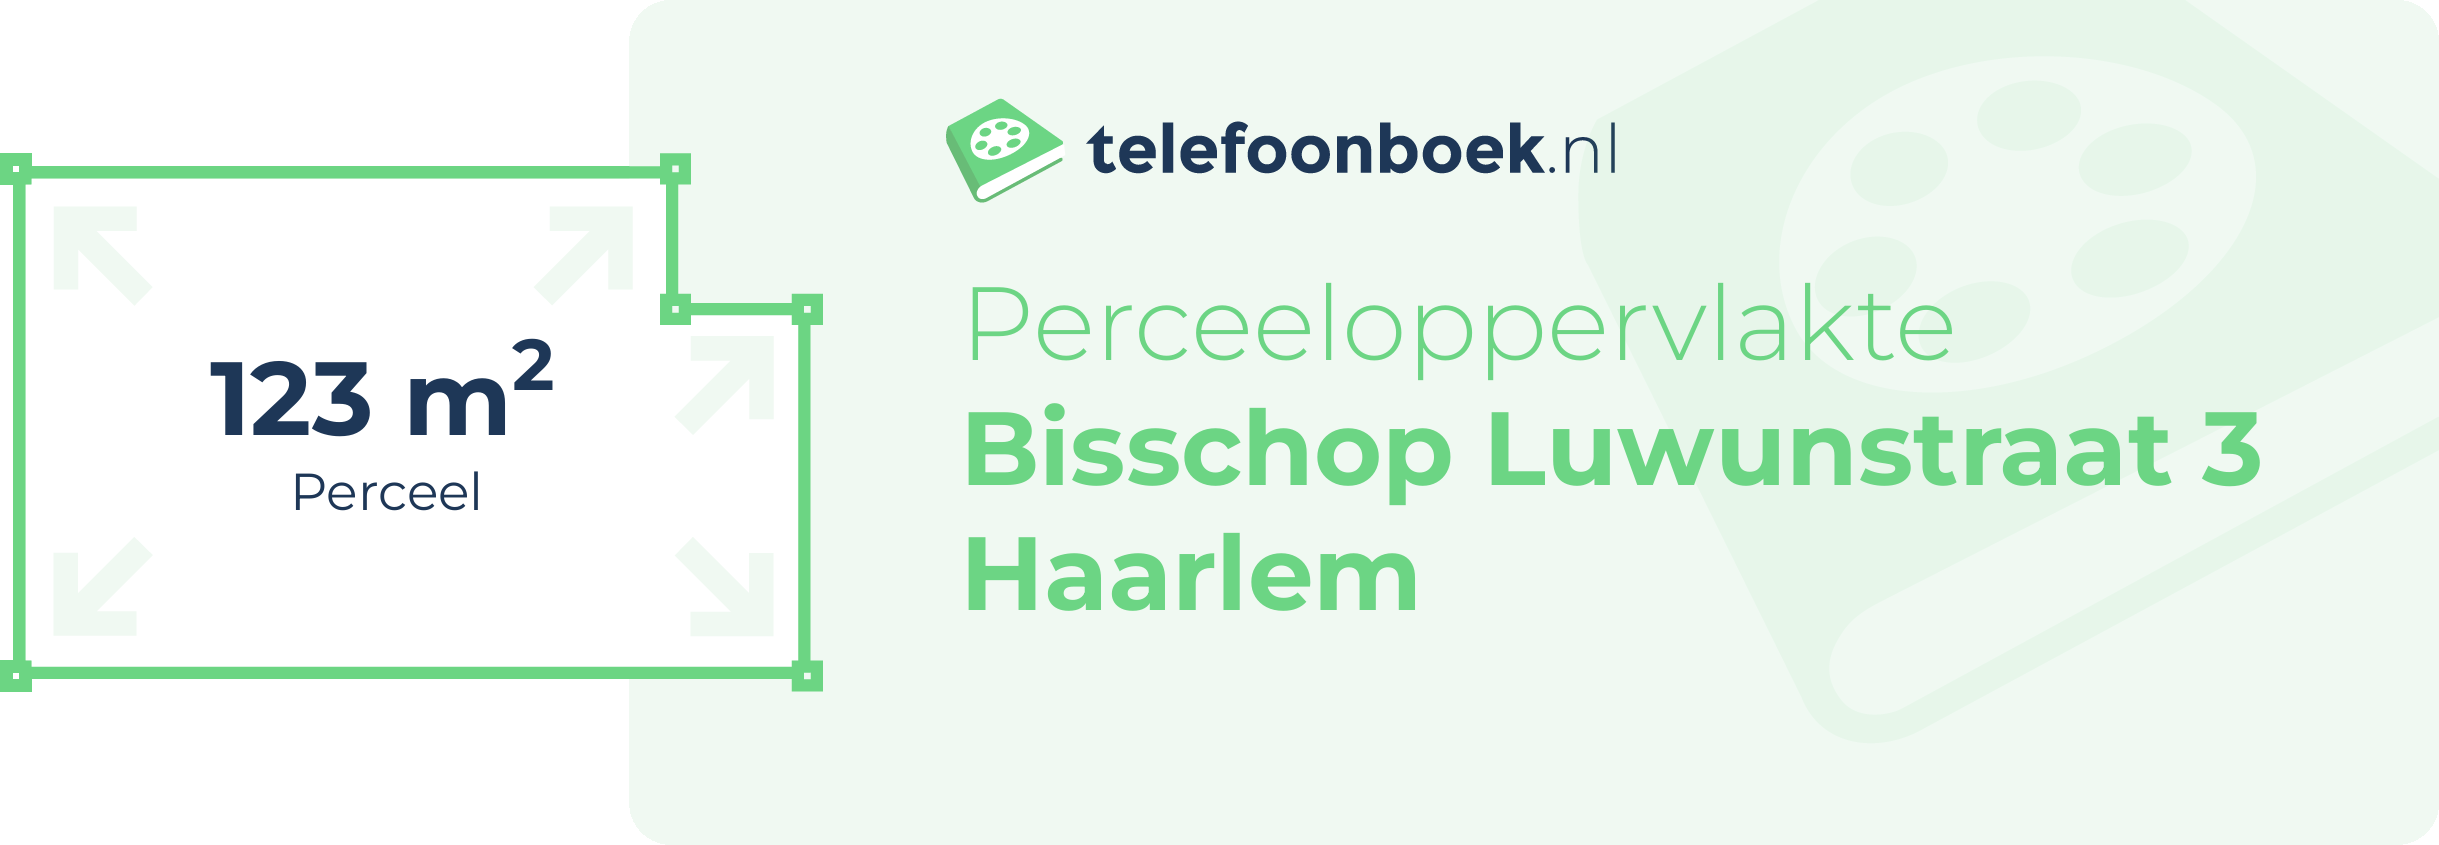 Perceeloppervlakte Bisschop Luwunstraat 3 Haarlem